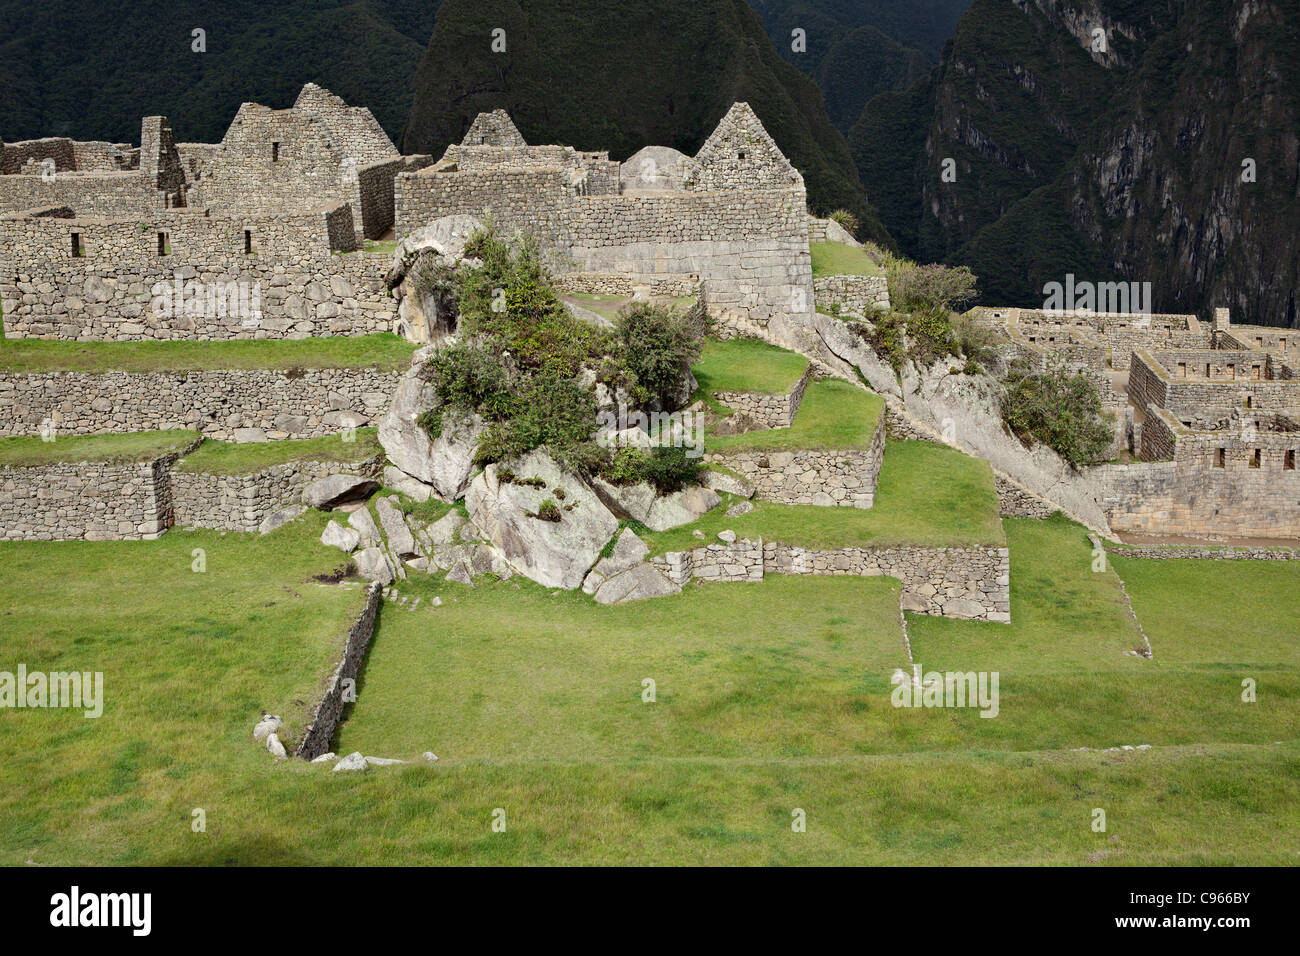 Ancienne ruines Incas de Machu Picchu, site touristique le plus connu dans la région de montagnes des Andes, au Pérou. Banque D'Images